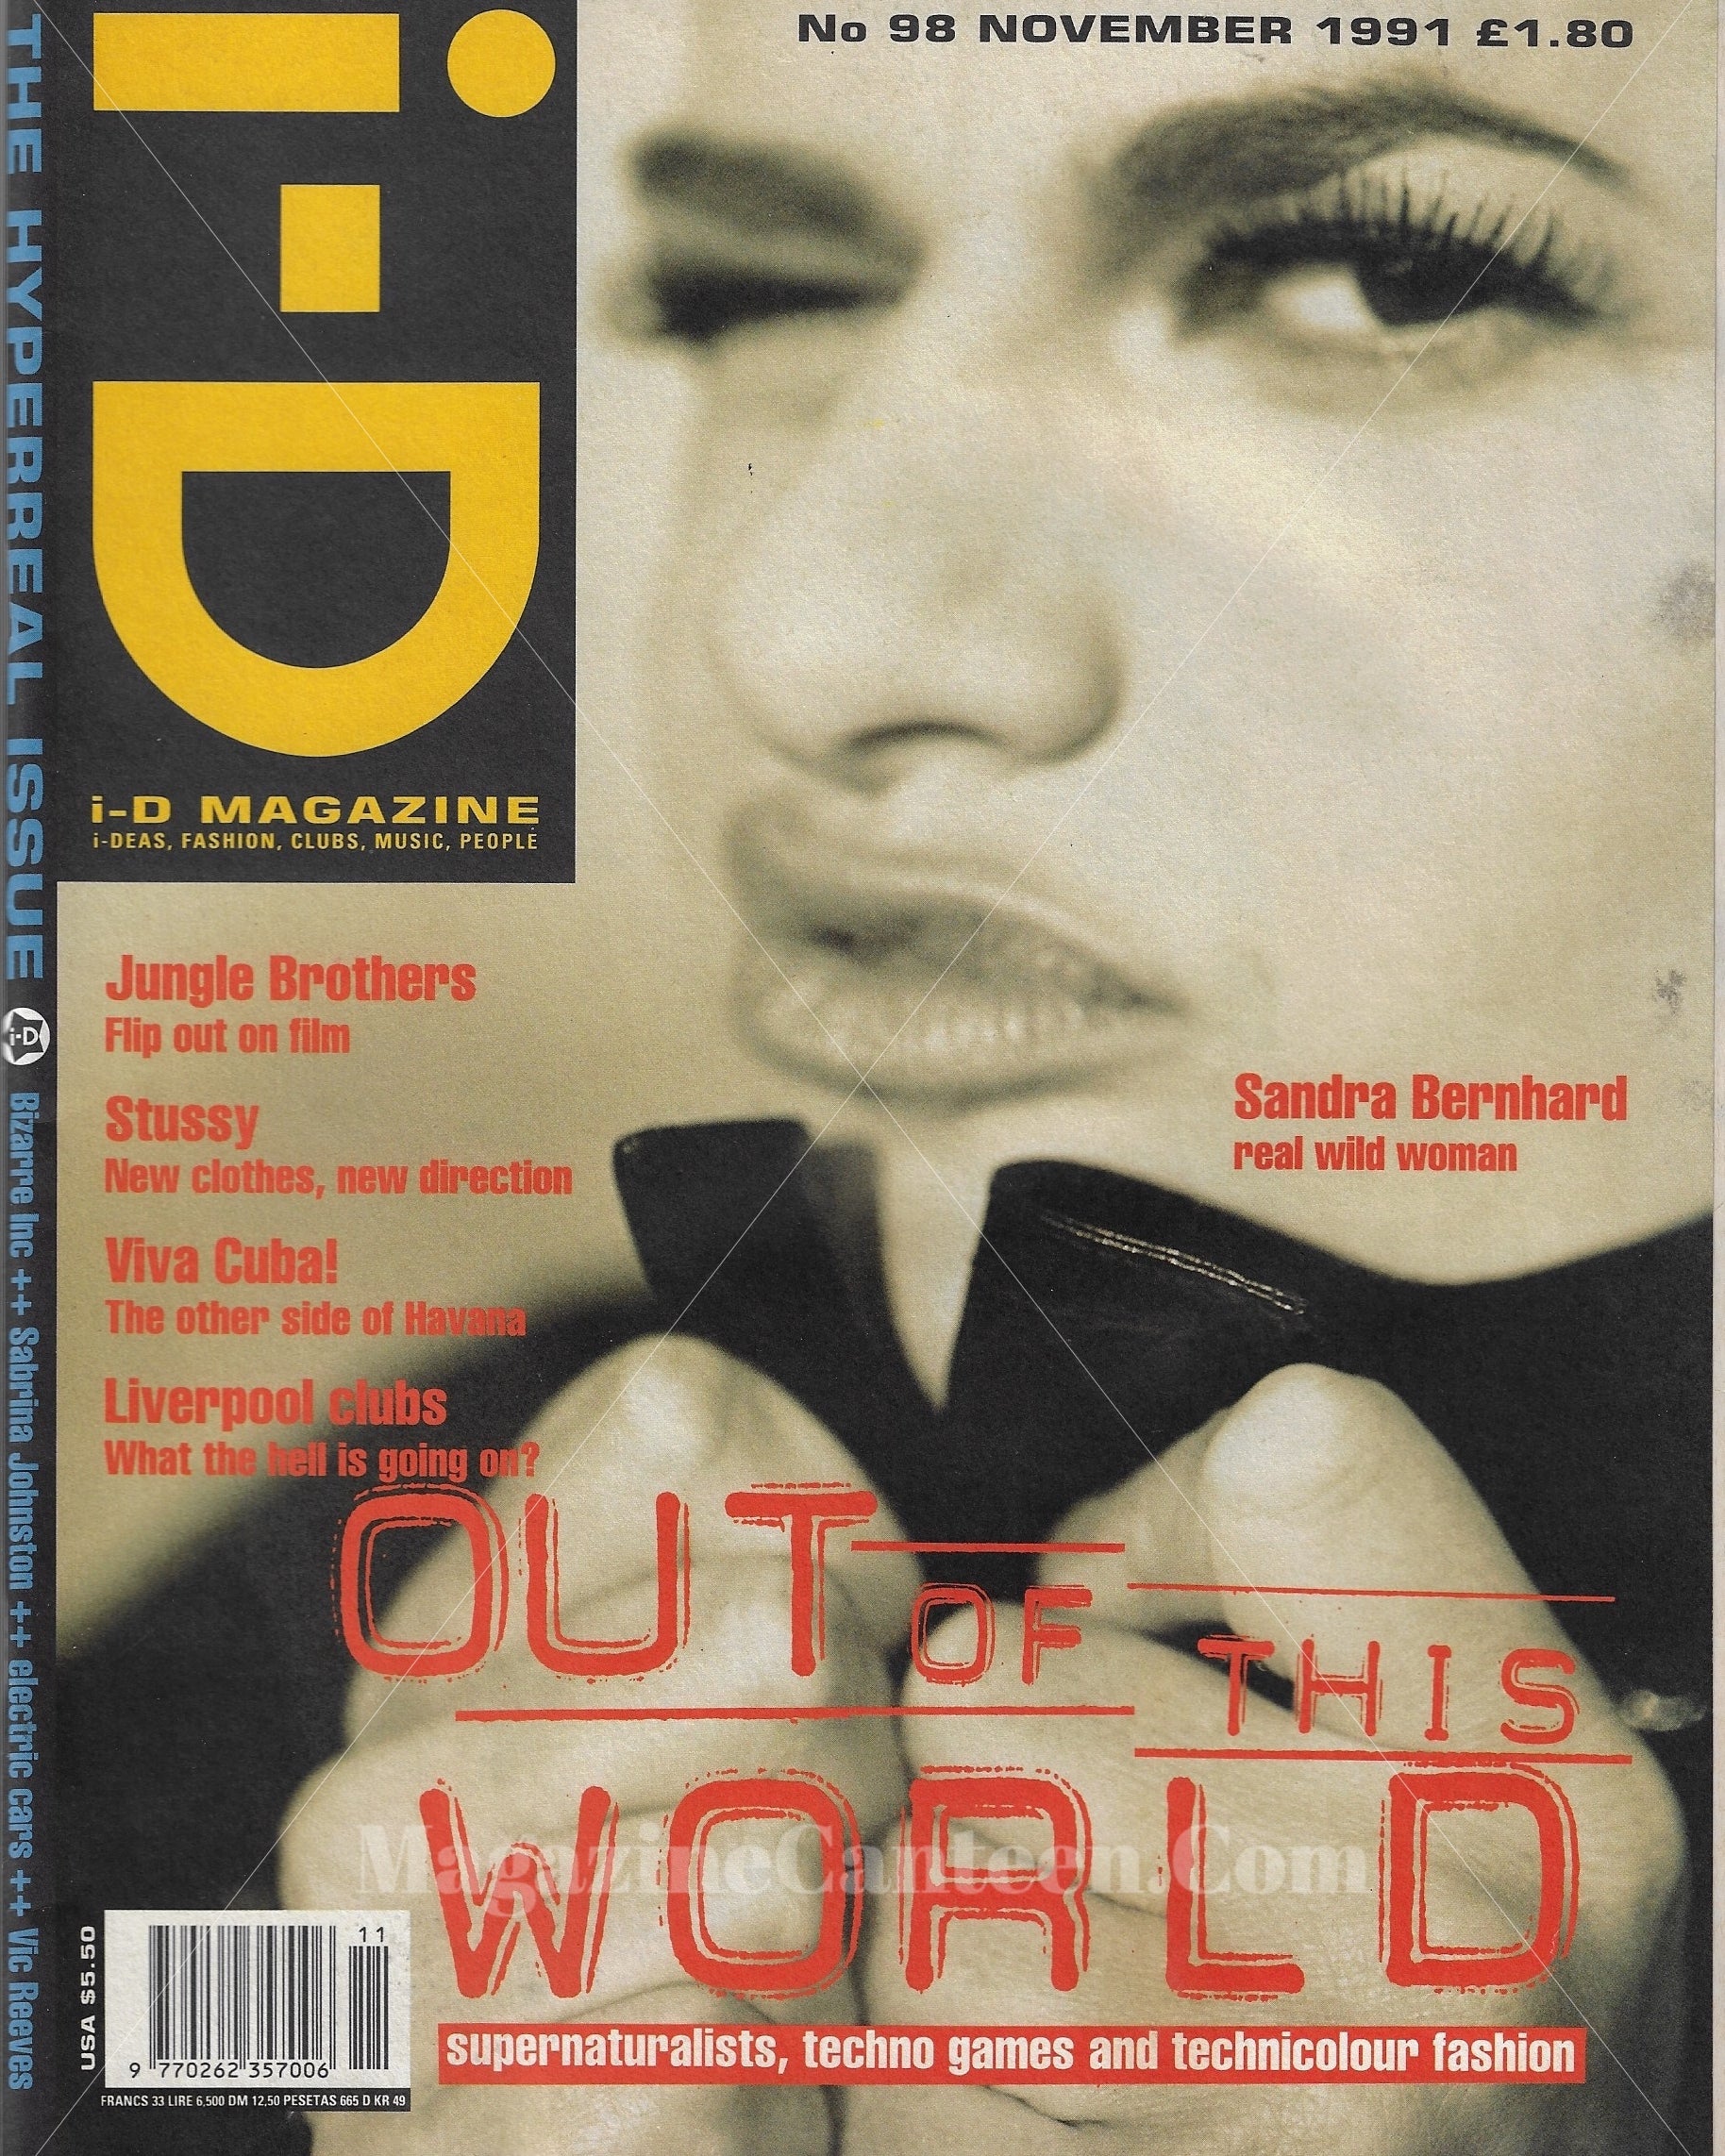 I-D Magazine 98 - Sandra Bernhard 1991